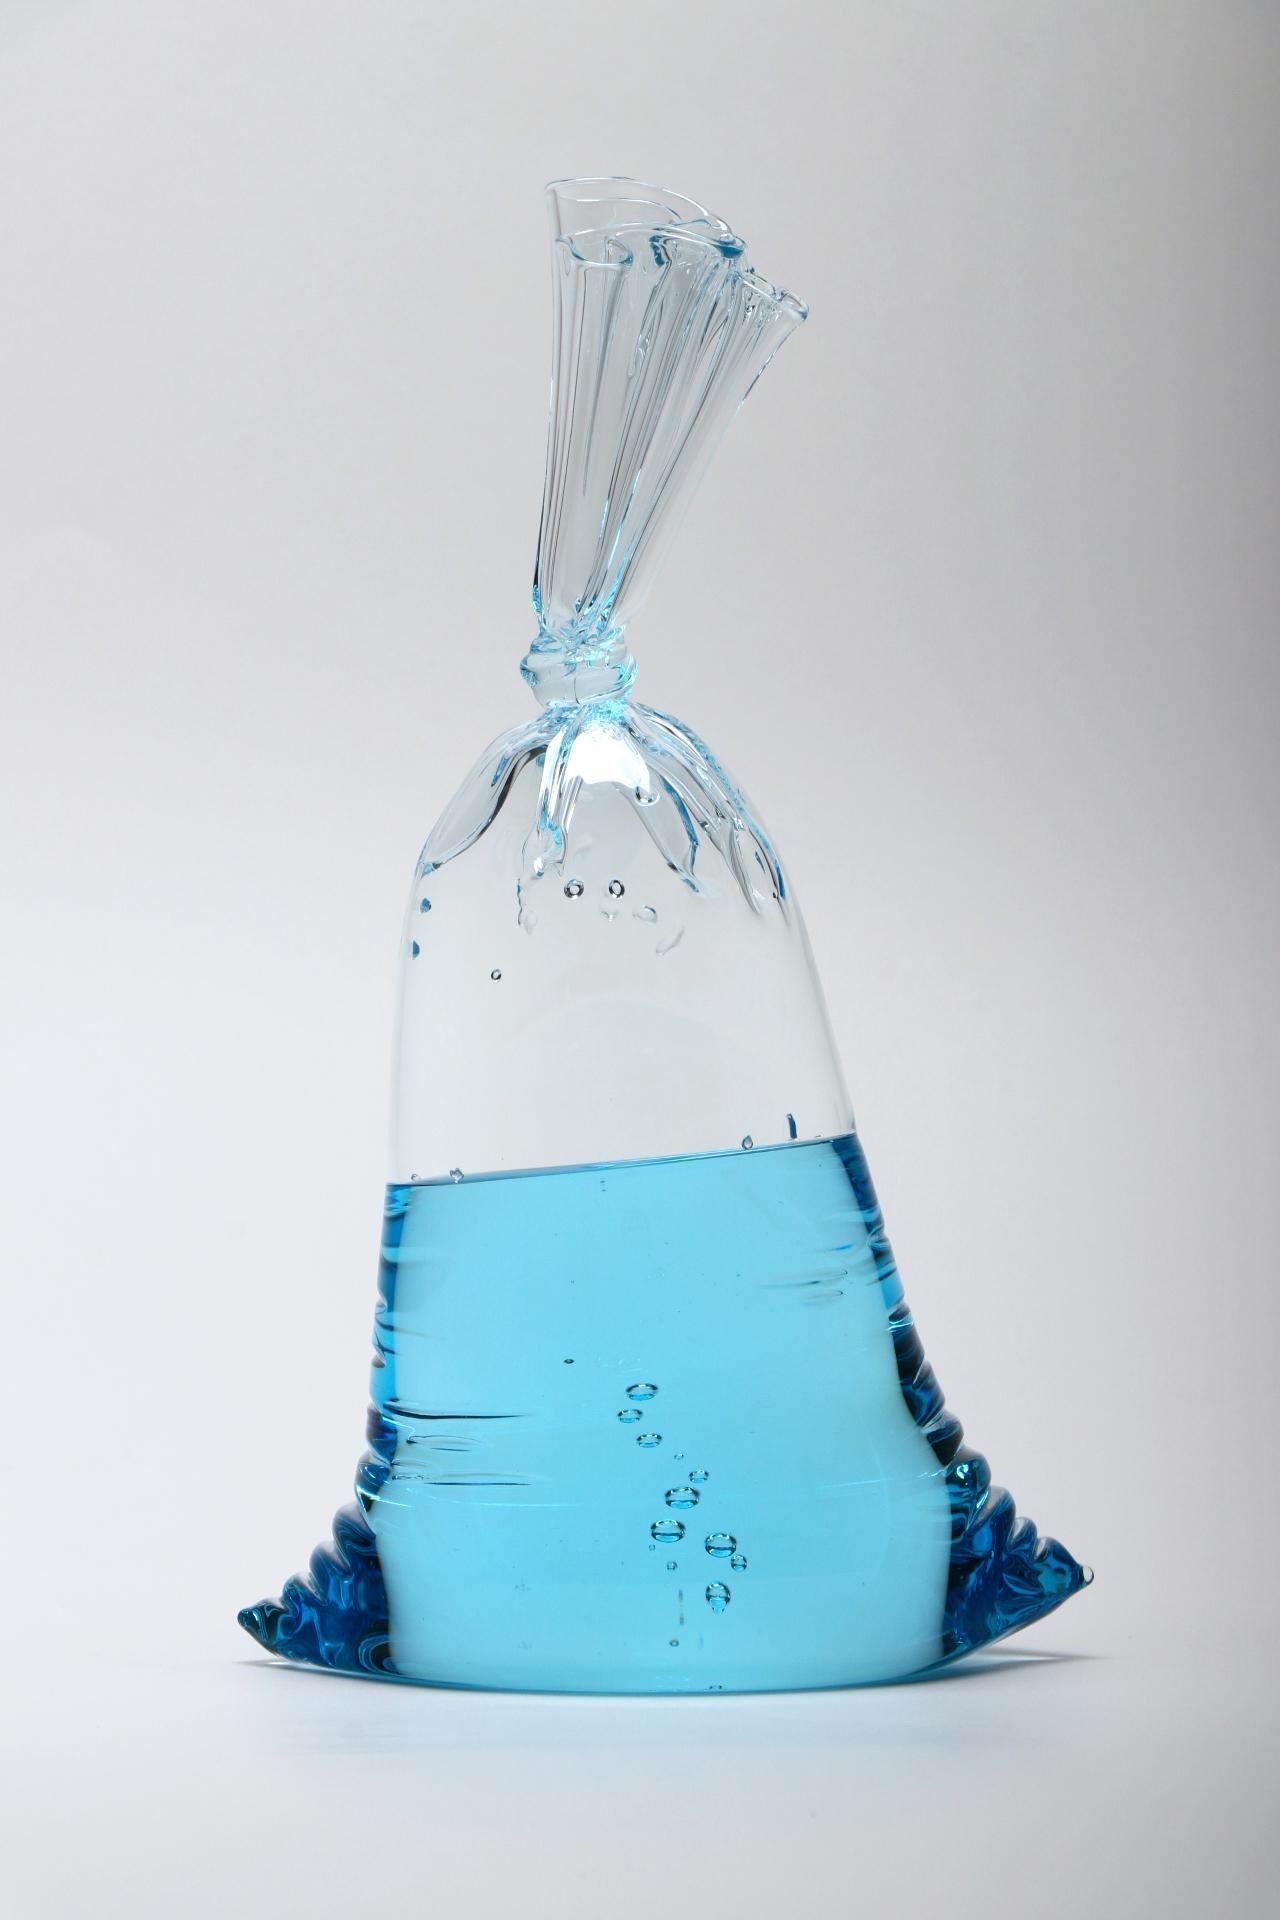 NOUVELLE PUBLICATION ! Blue Series - Petite sculpture hyperréaliste en verre bleu, en forme de sac d'eau, en verre plein et en verre creux par Dylan Martinez. 

Taille : 11.75 x 7 x 4.5 pouces

Les sculptures hyperréelles de Dylan Martinez sont en